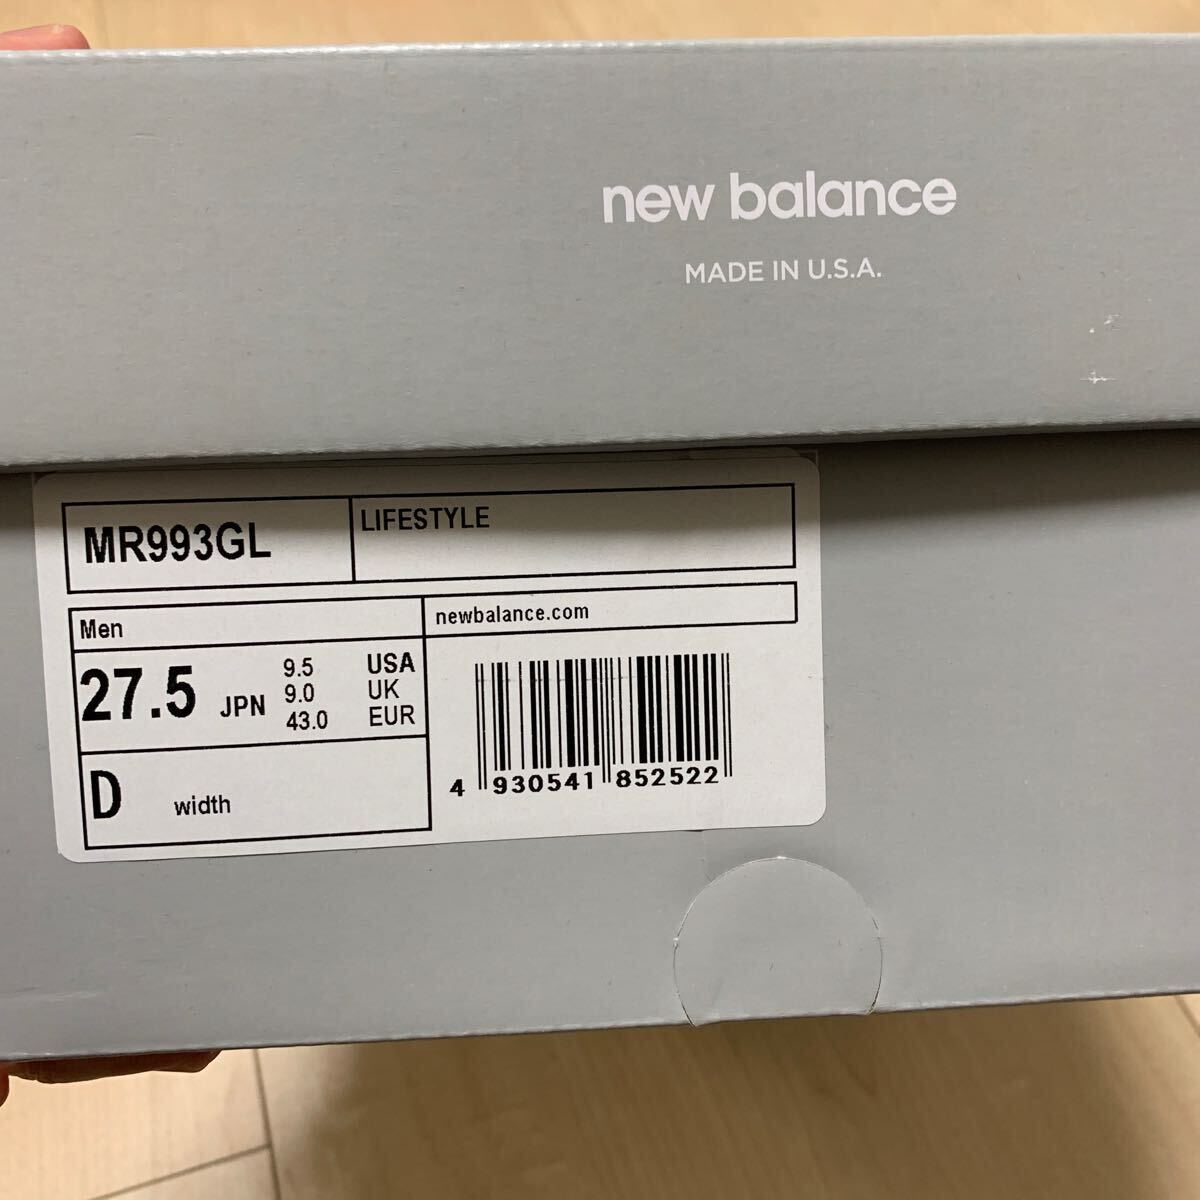 2022 год производства new balance MR993GL серый спортивные туфли 27.5.D wise превосходный товар sni Dan оценка стандартный товар New balance 992 990 991